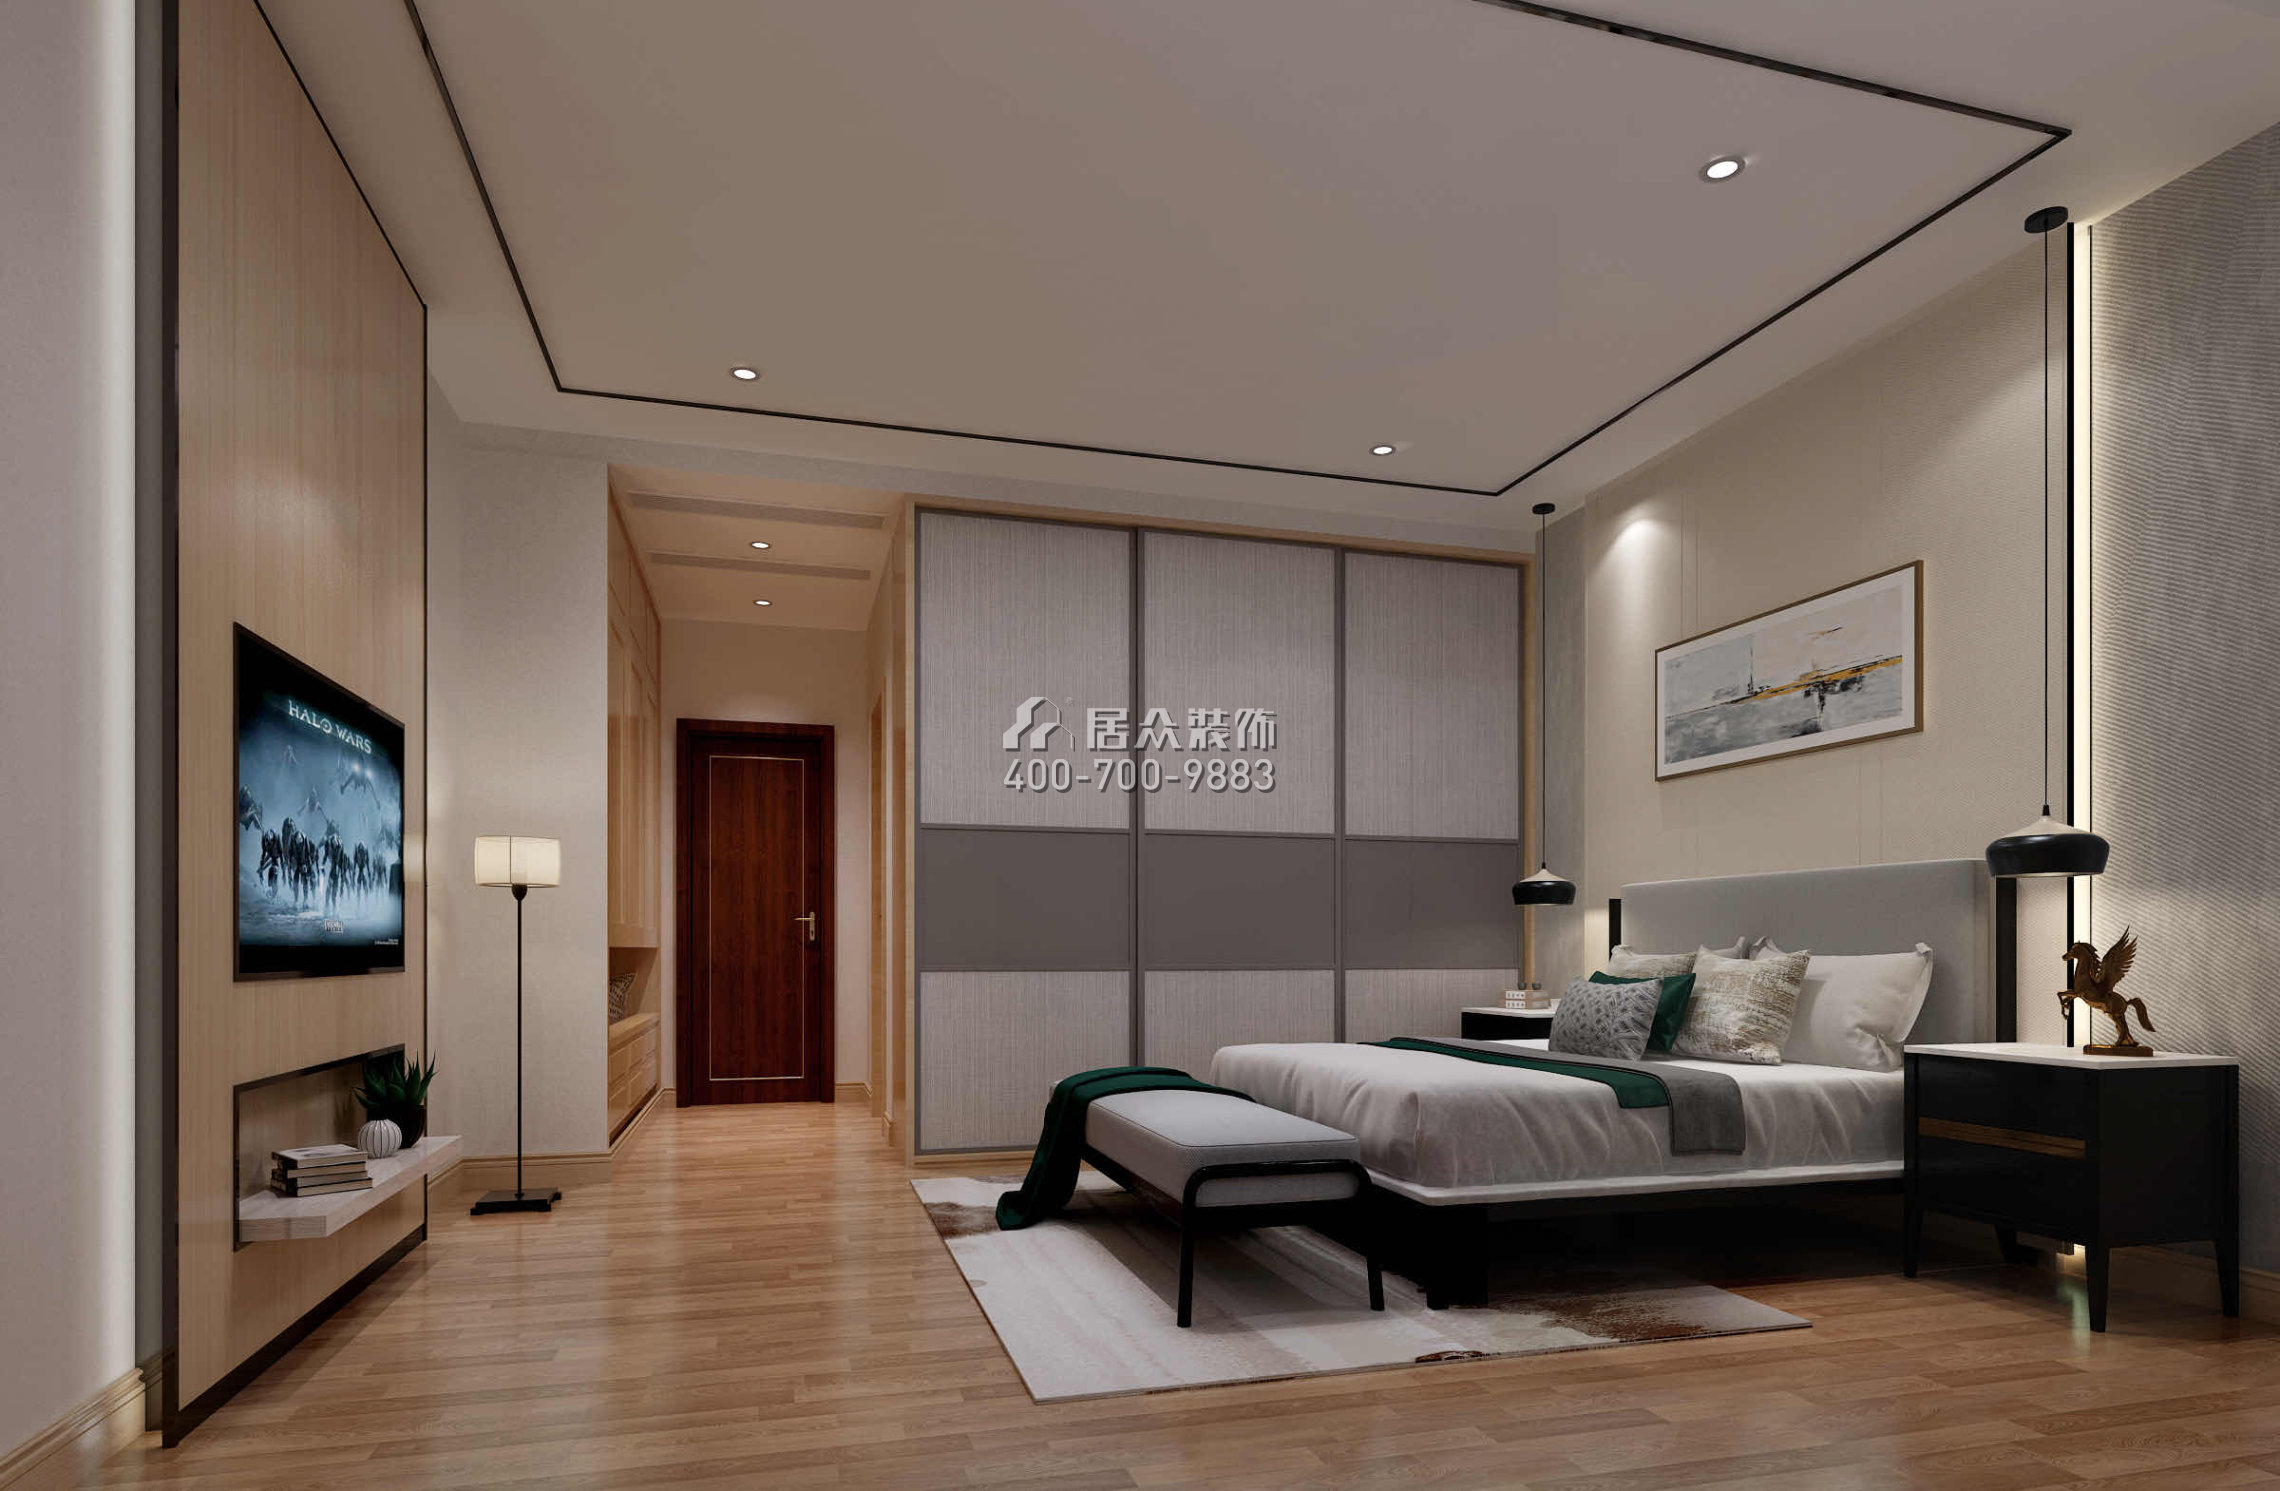 君御旗峰200平方米中式风格平层户型卧室装修效果图